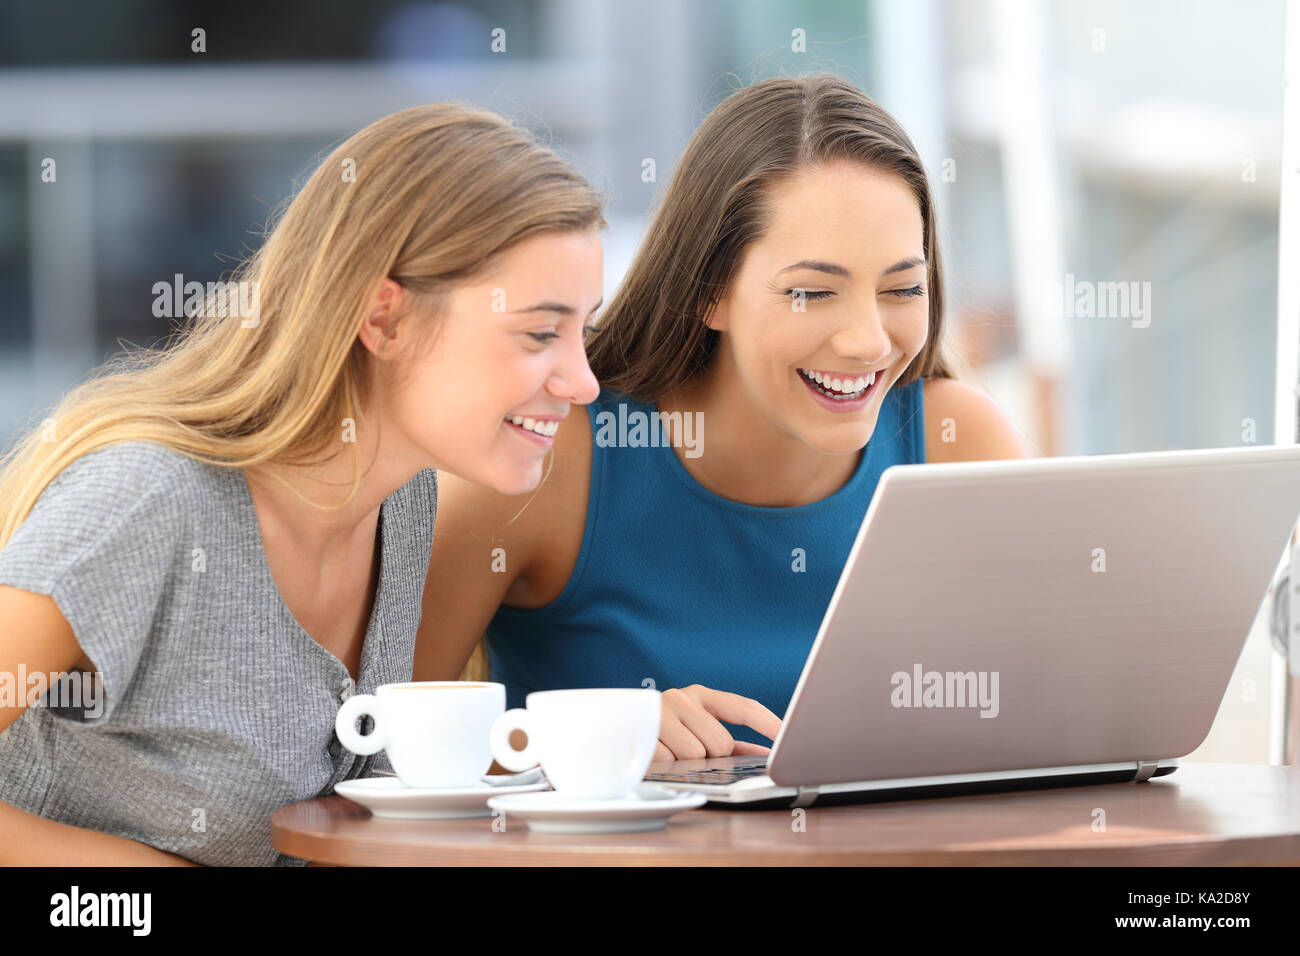 Heureux deux amis qui rient en regardant à la ligne du contenu dans un ordinateur portable assis sur une terrasse de restaurant Banque D'Images